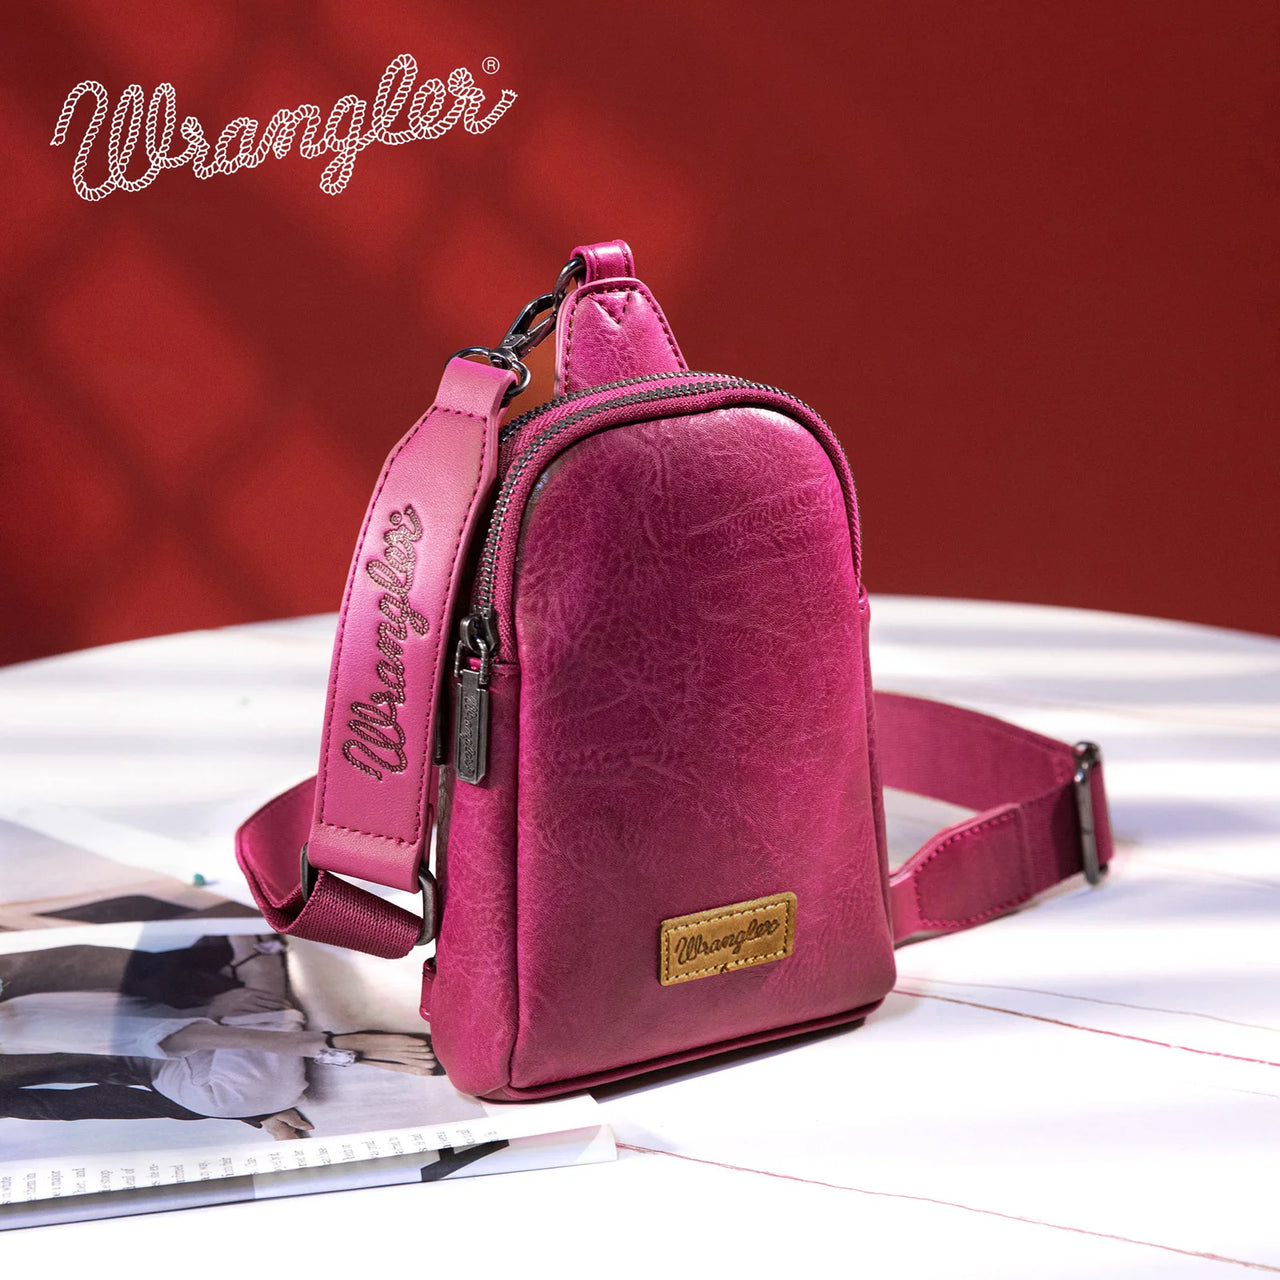 Wrangler Women's Sling Bag/Crossbody/Chest Bag - Hot Pink